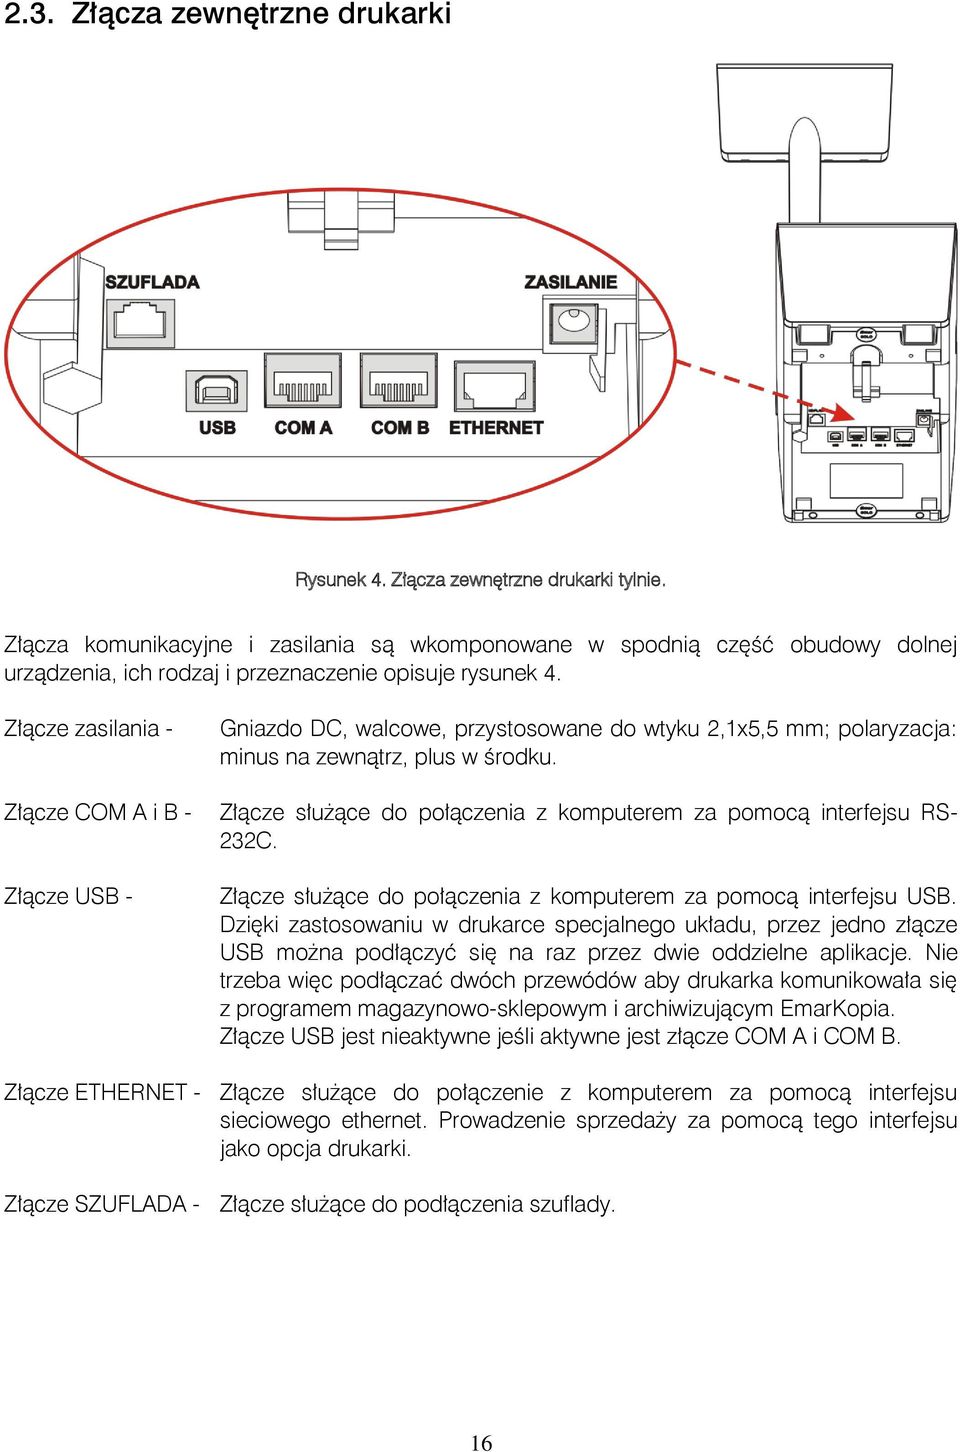 Złącze zasilania - Złącze COM A i B - Złącze USB - Gniazdo DC, walcowe, przystosowane do wtyku 2,1x5,5 mm; polaryzacja: minus na zewnątrz, plus w środku.